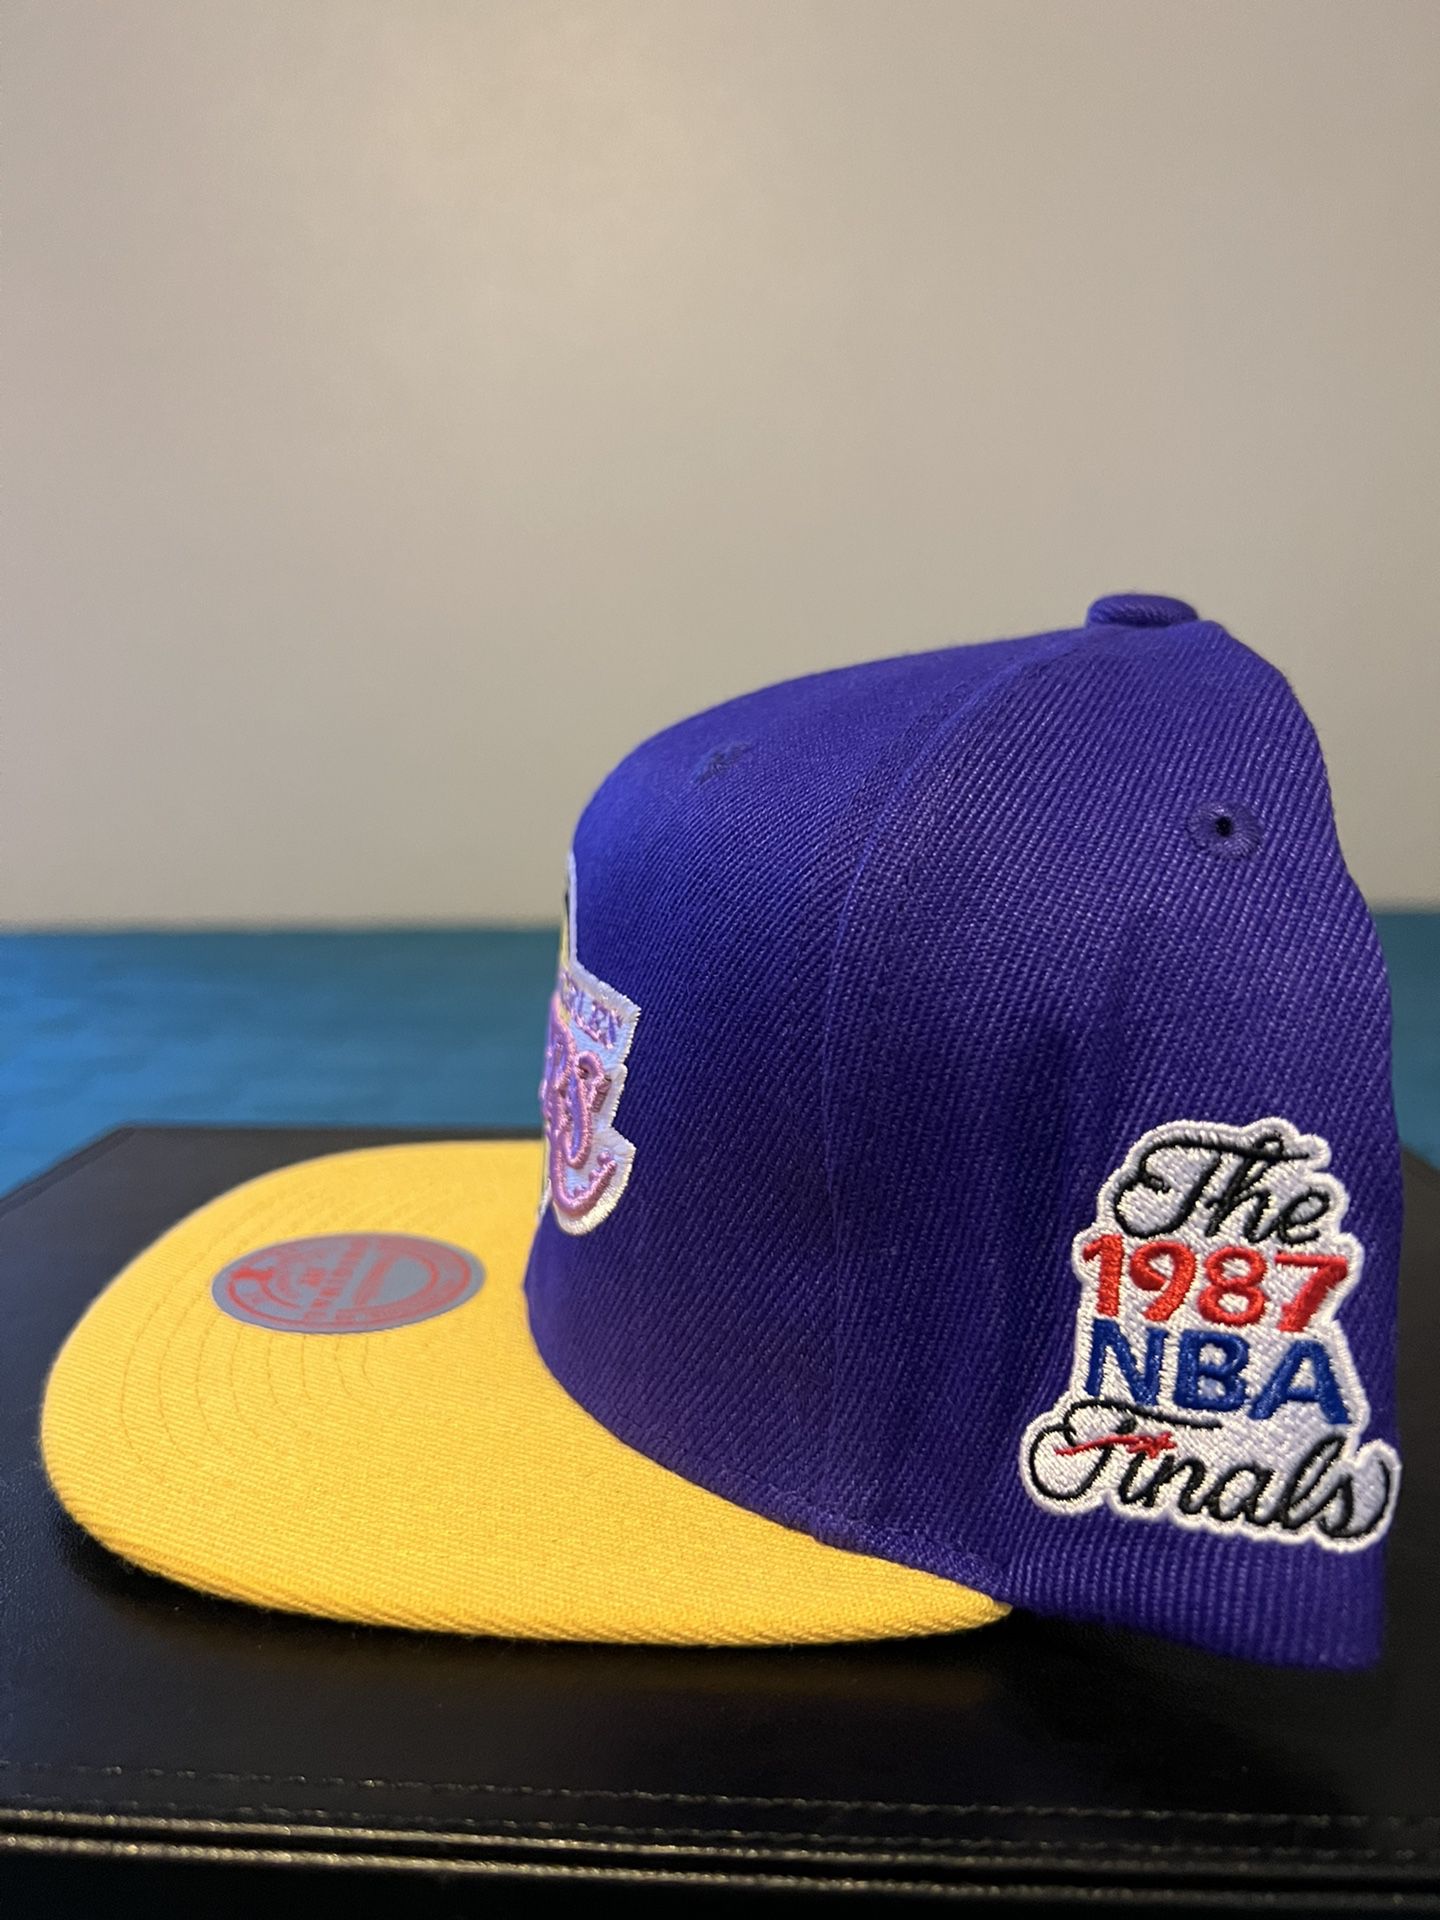 Vintage Los Angeles LA Lakers 1987 NBA finals champions Hat